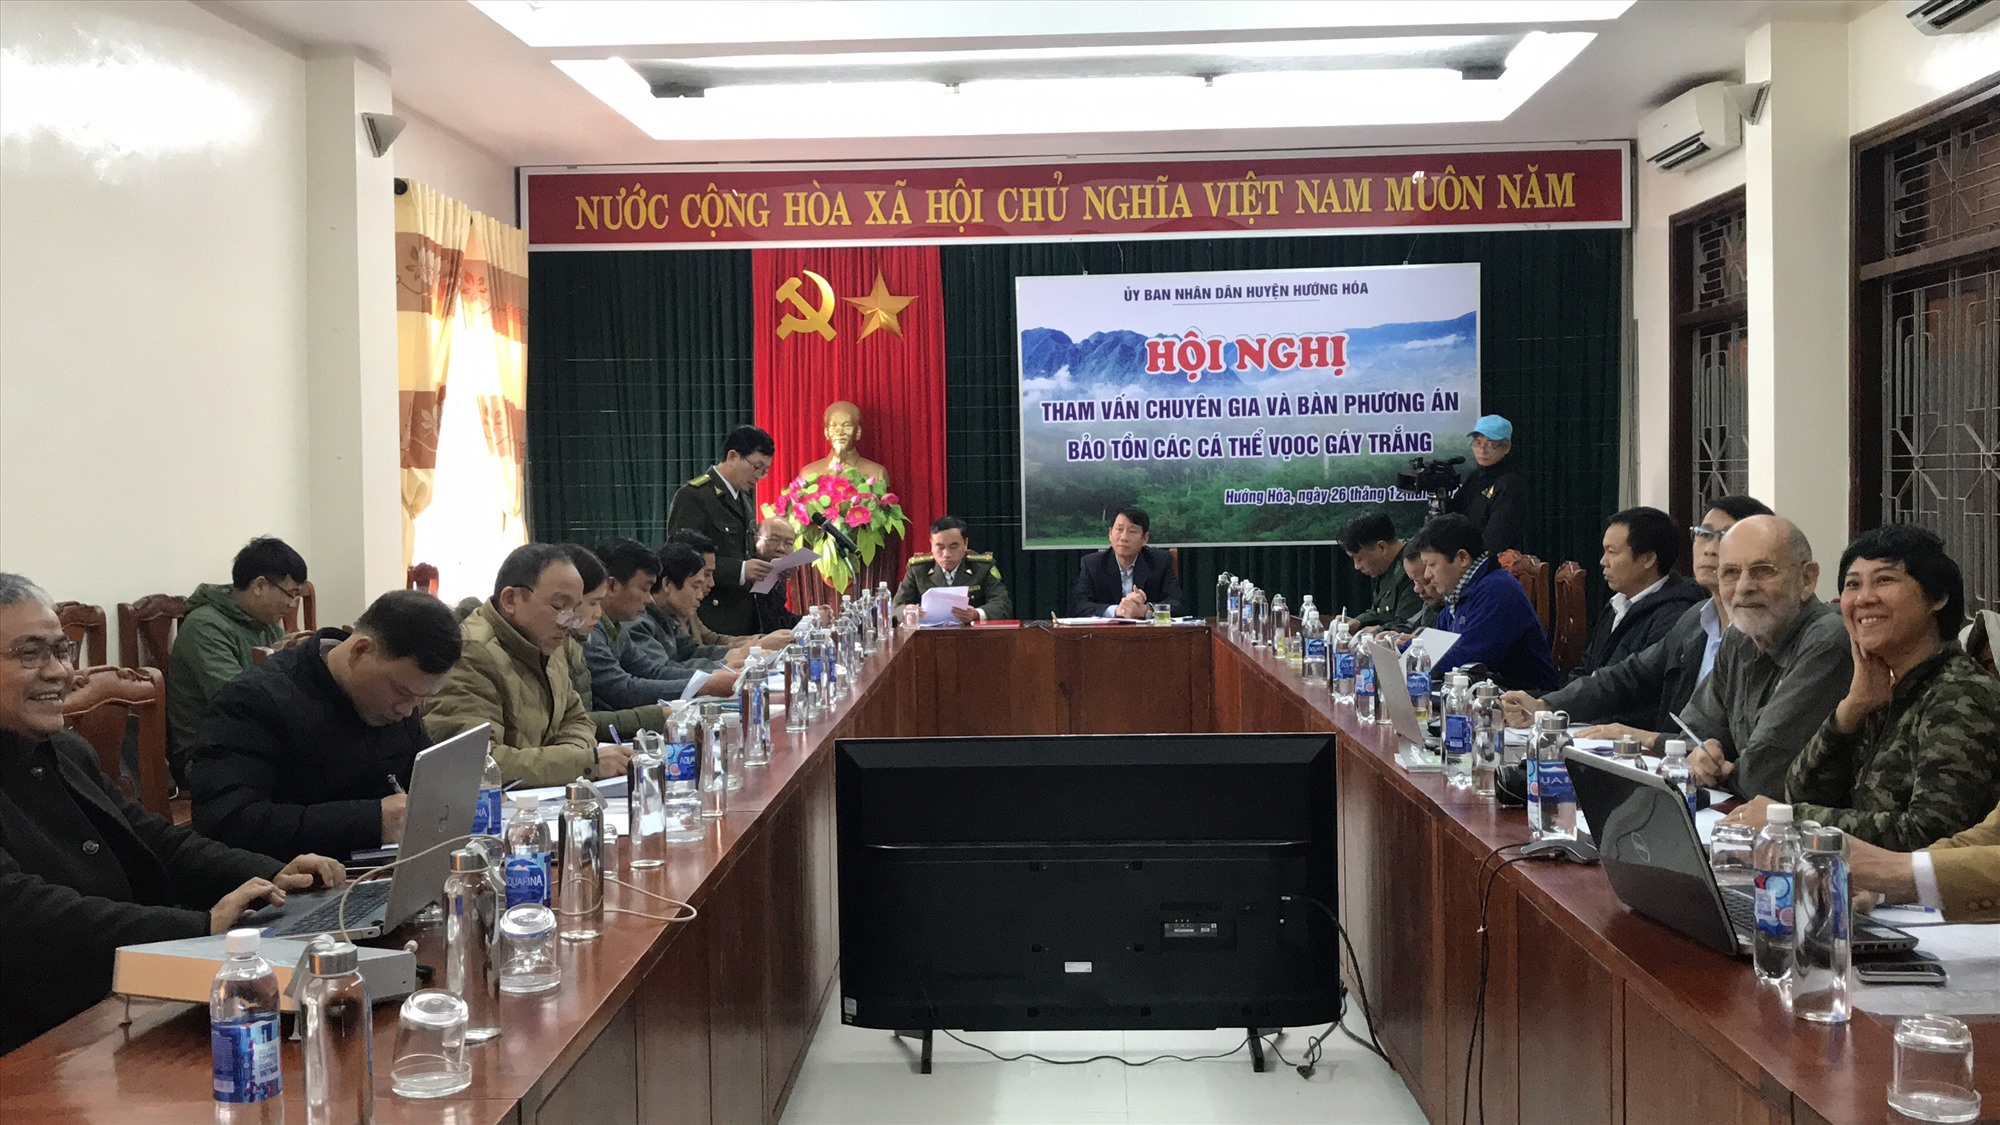 UBND huyện Hướng Hóa lấy ý kiến các chuyên gia về phương án bảo tồn các cá thể Voọc gáy trắng - Ảnh: L.T